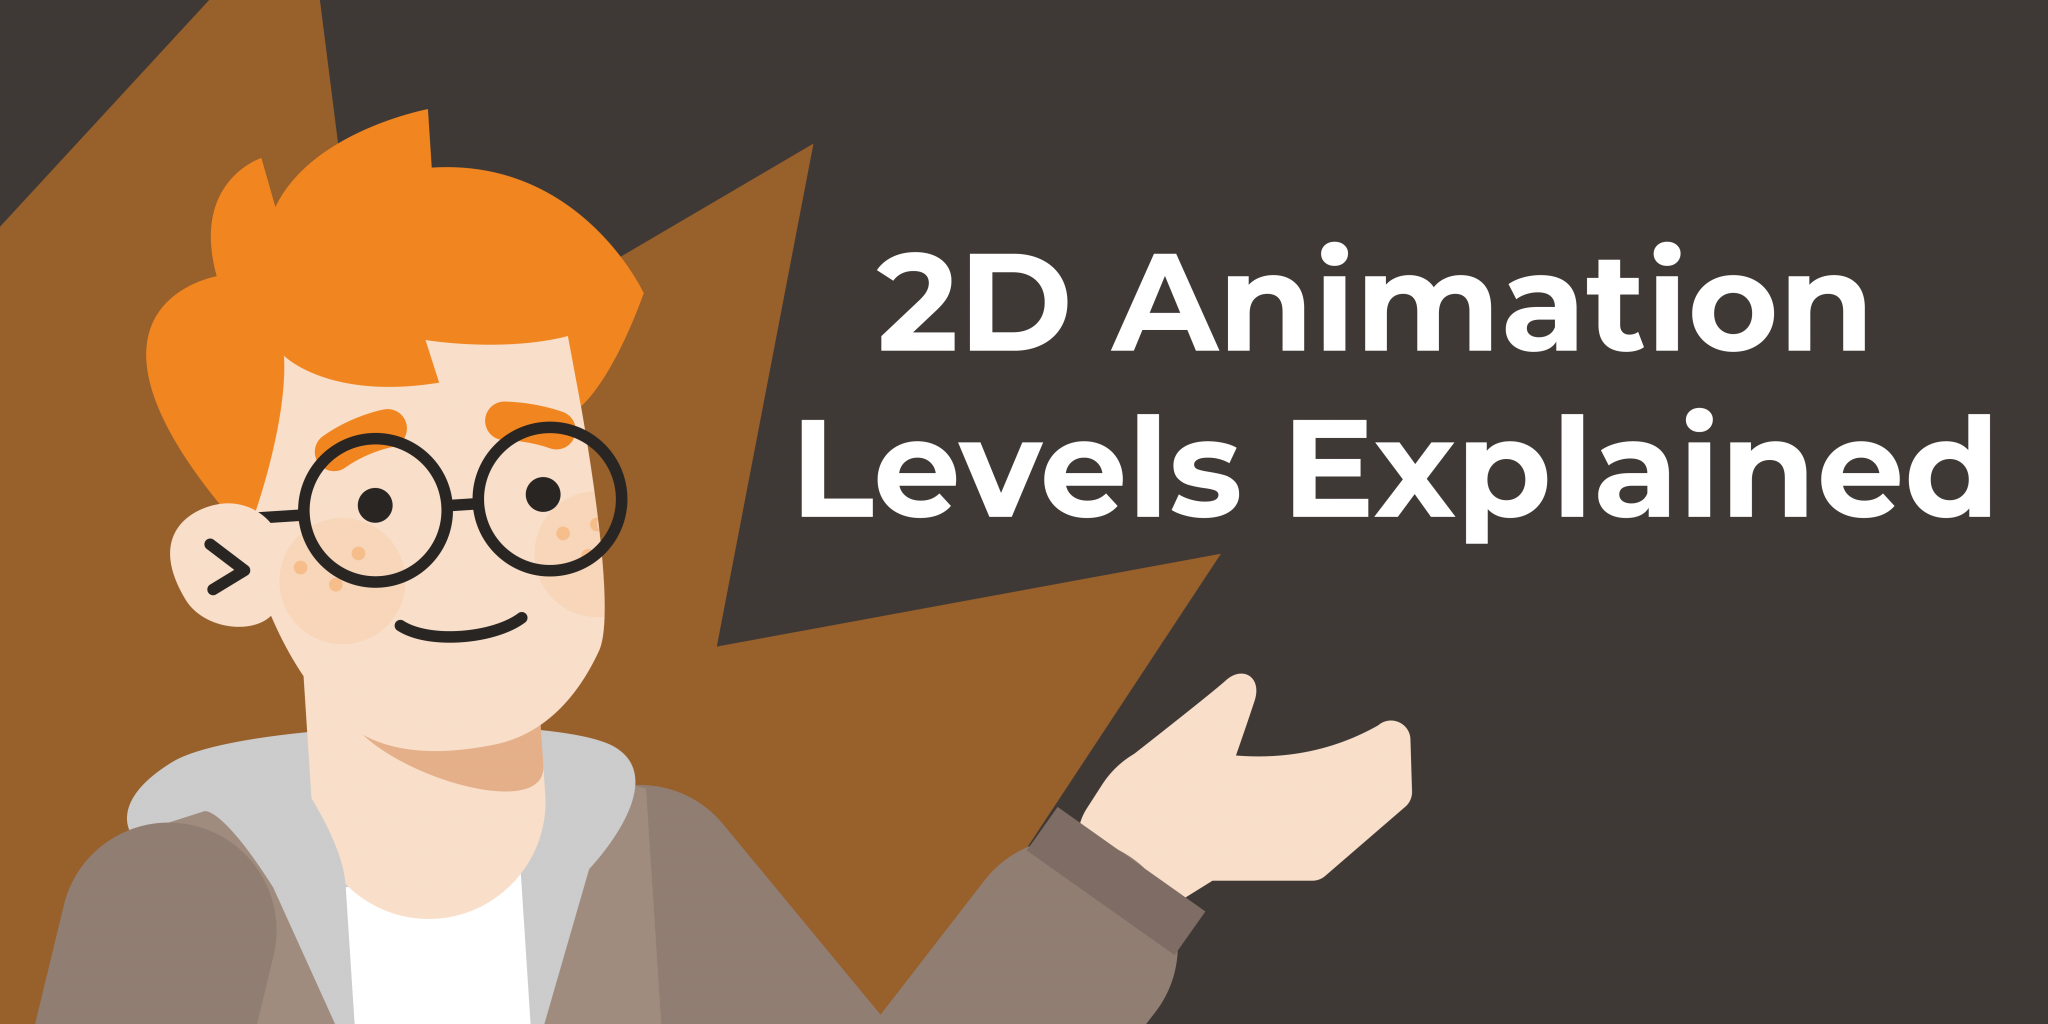 Animation Levels Explained